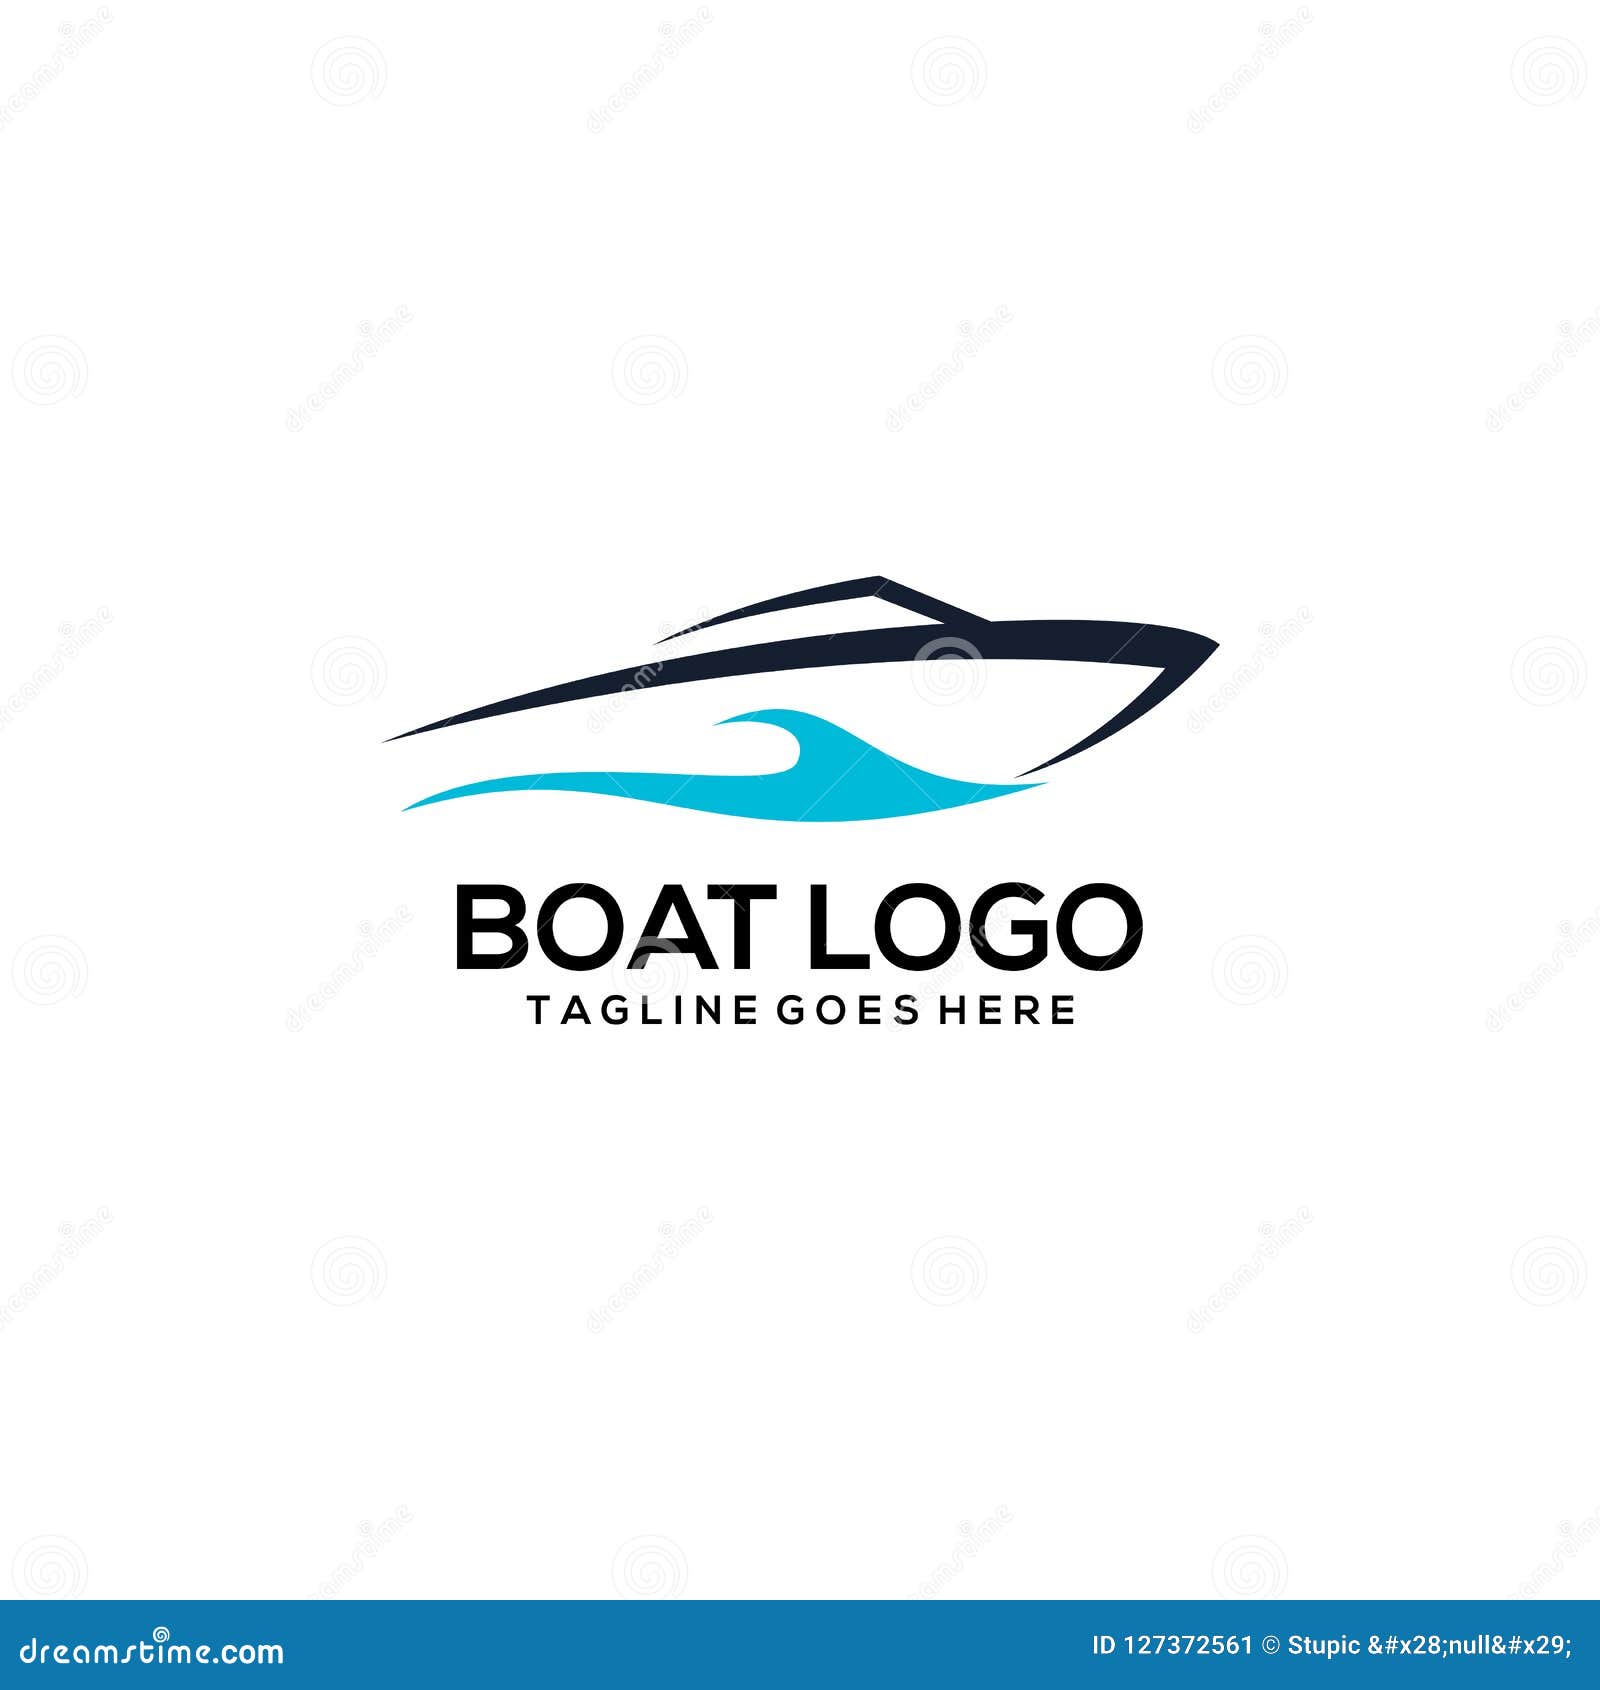 Creative Boat Logo Design Vector Art Logo Stock Vector ...